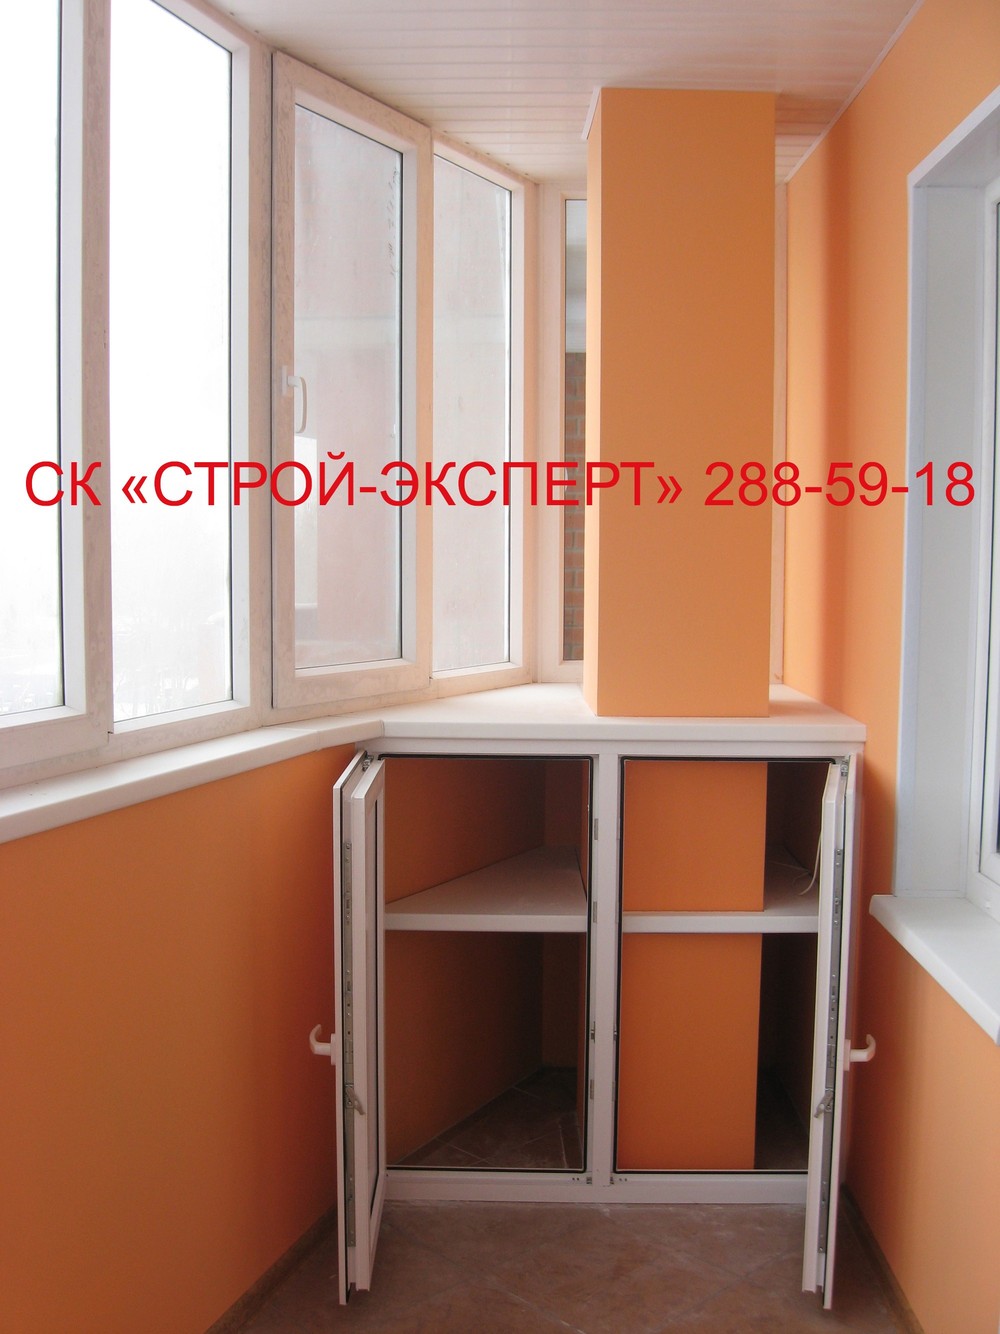 ФОТО-ГАЛЕРЕЯ - Шкафчики фото - Шкафчик на балкон Пермь Внутренняя отделка, окна, жалюзи